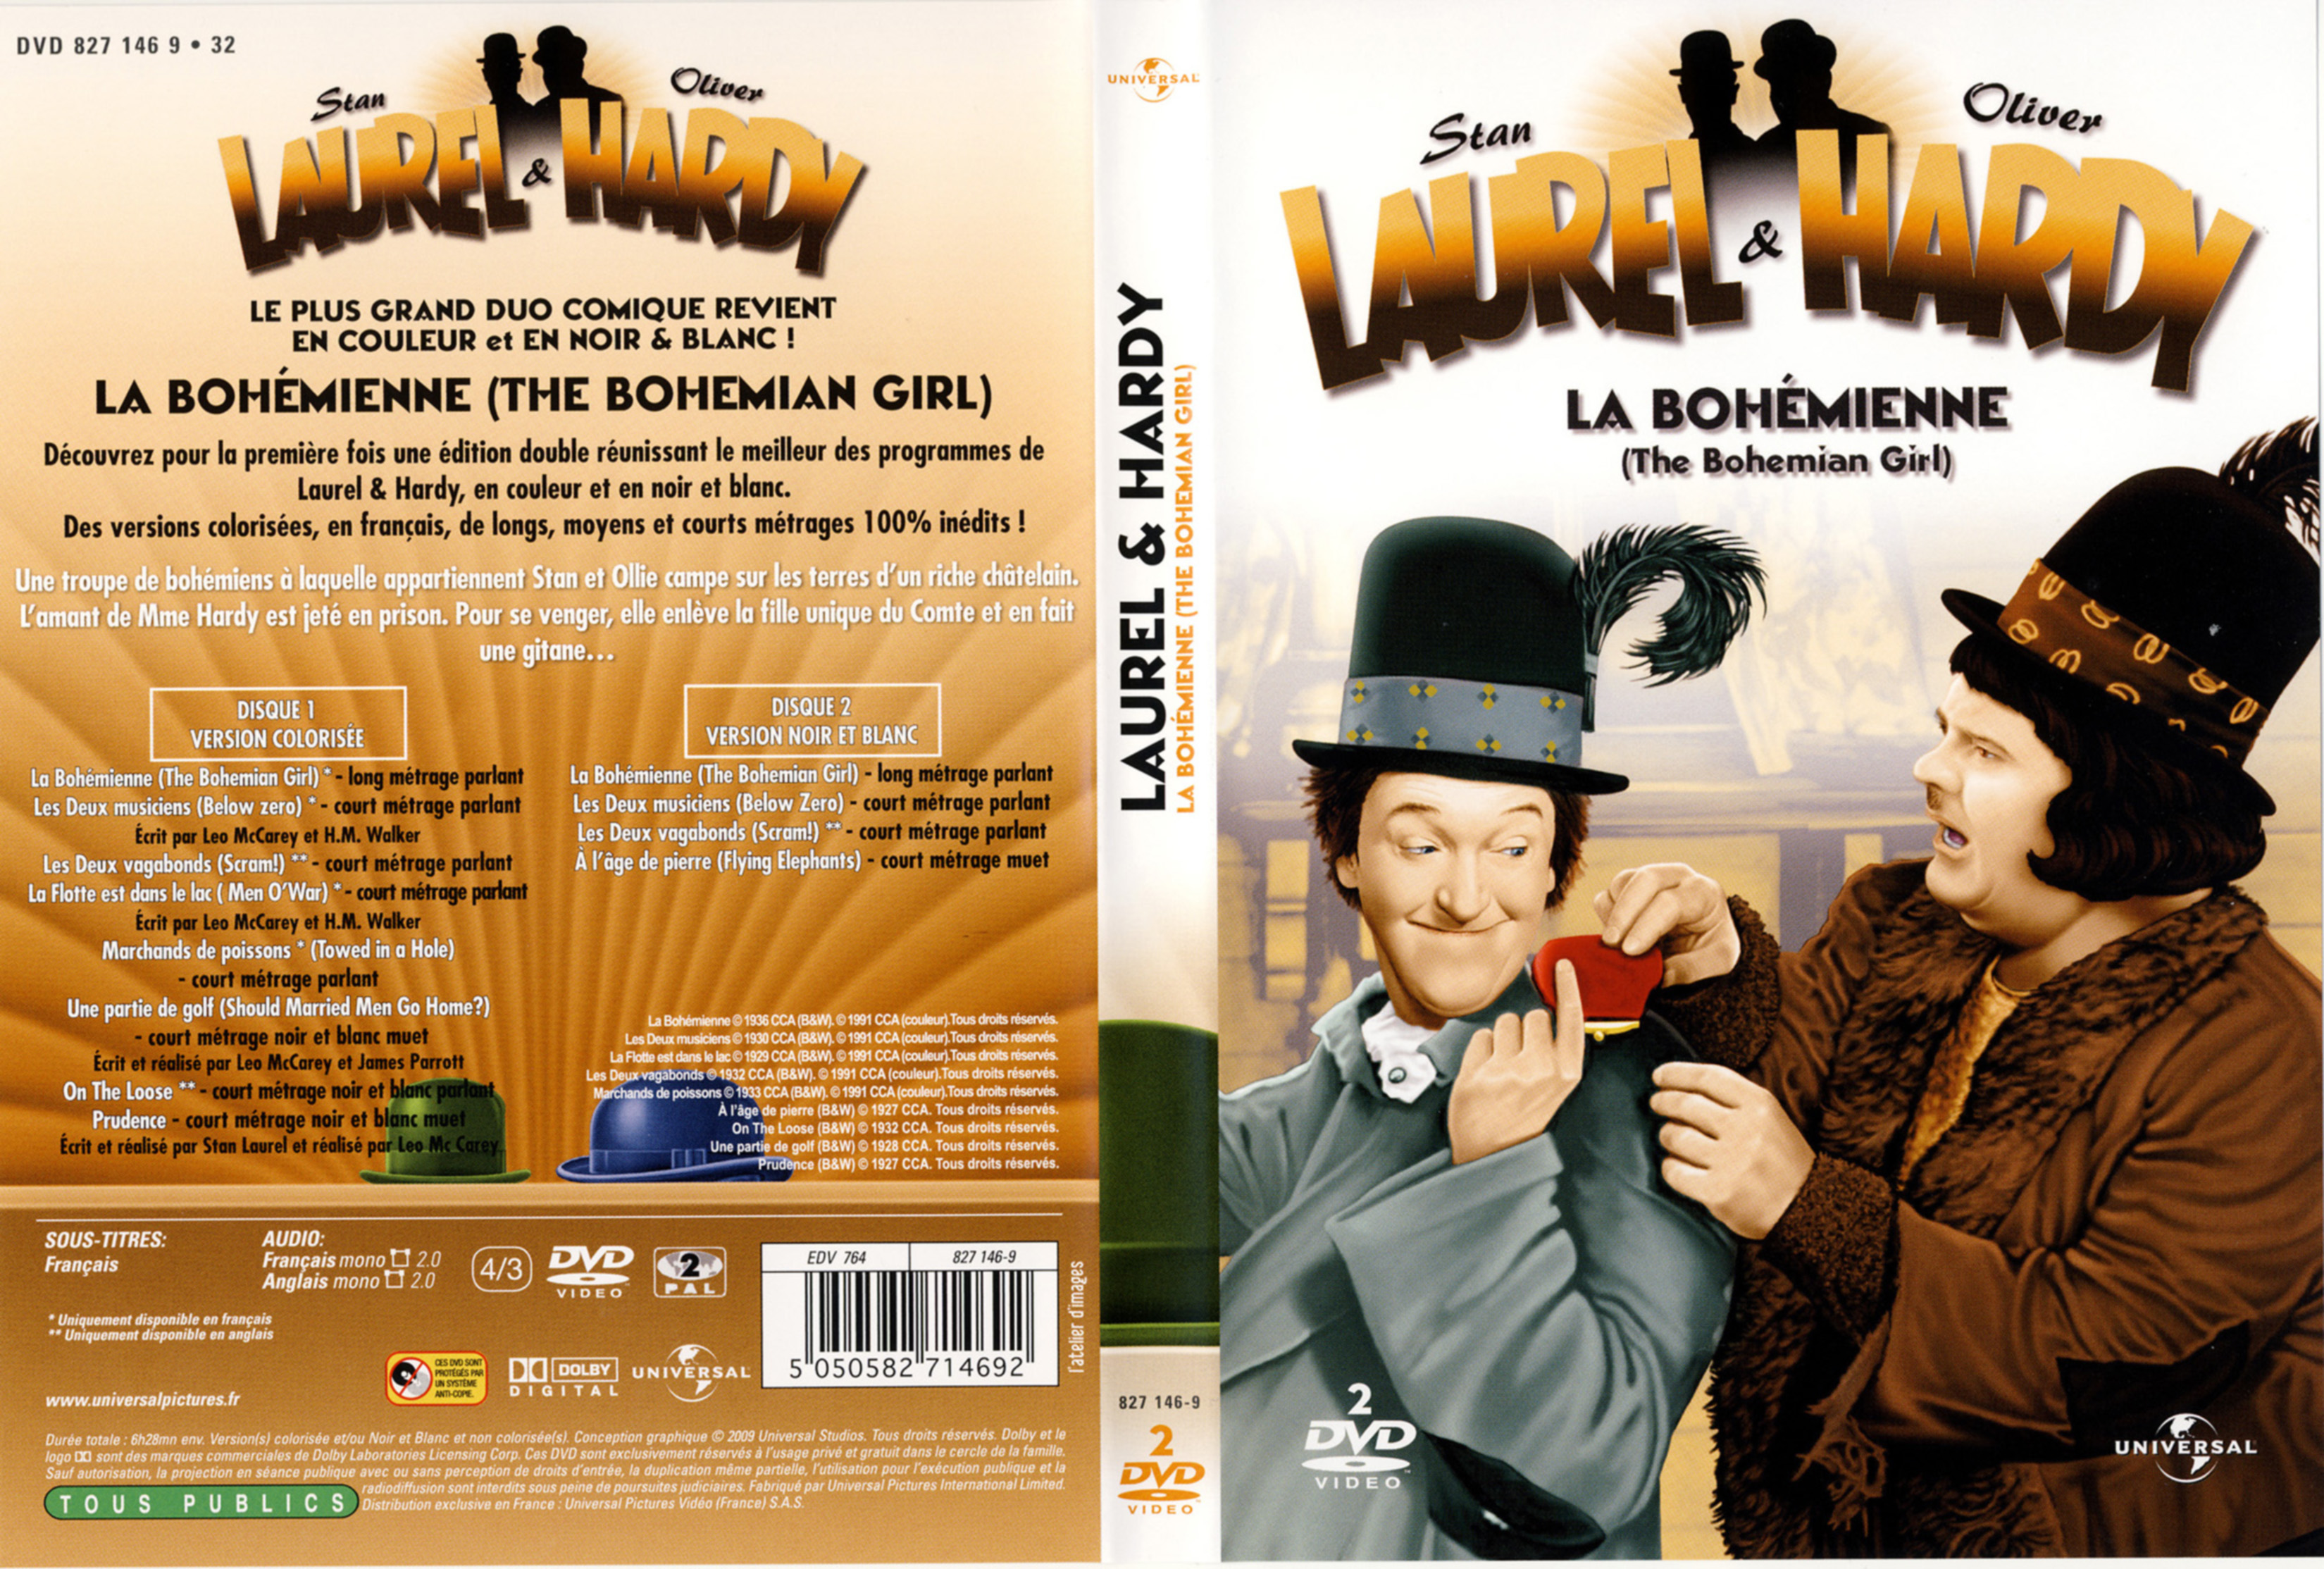 Jaquette DVD Laurel et Hardy La bohmienne v2